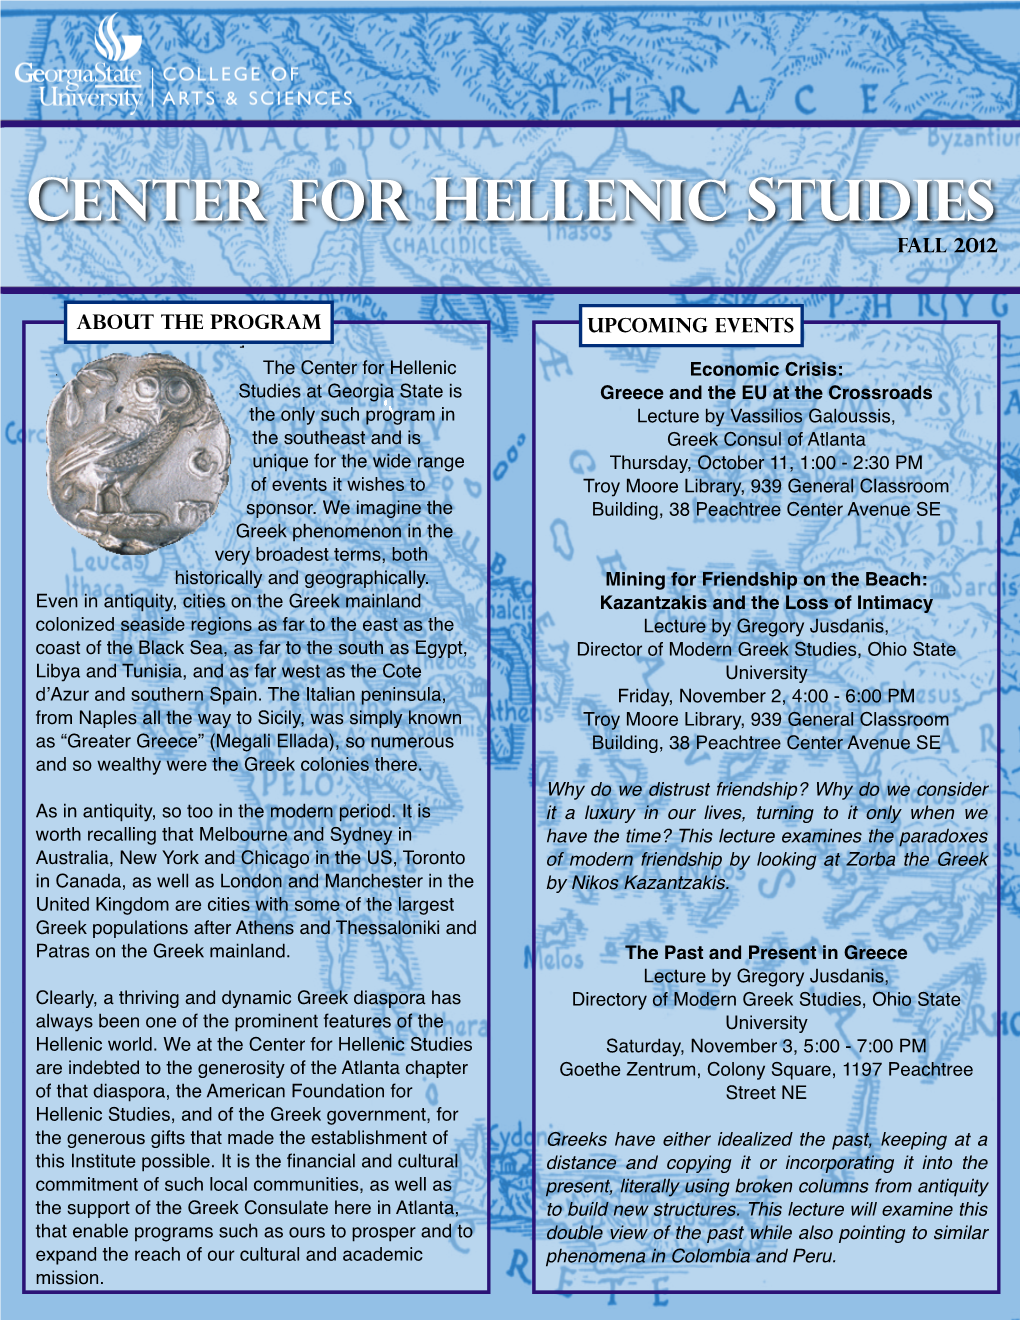 Center for Hellenic Studies Fall 2012